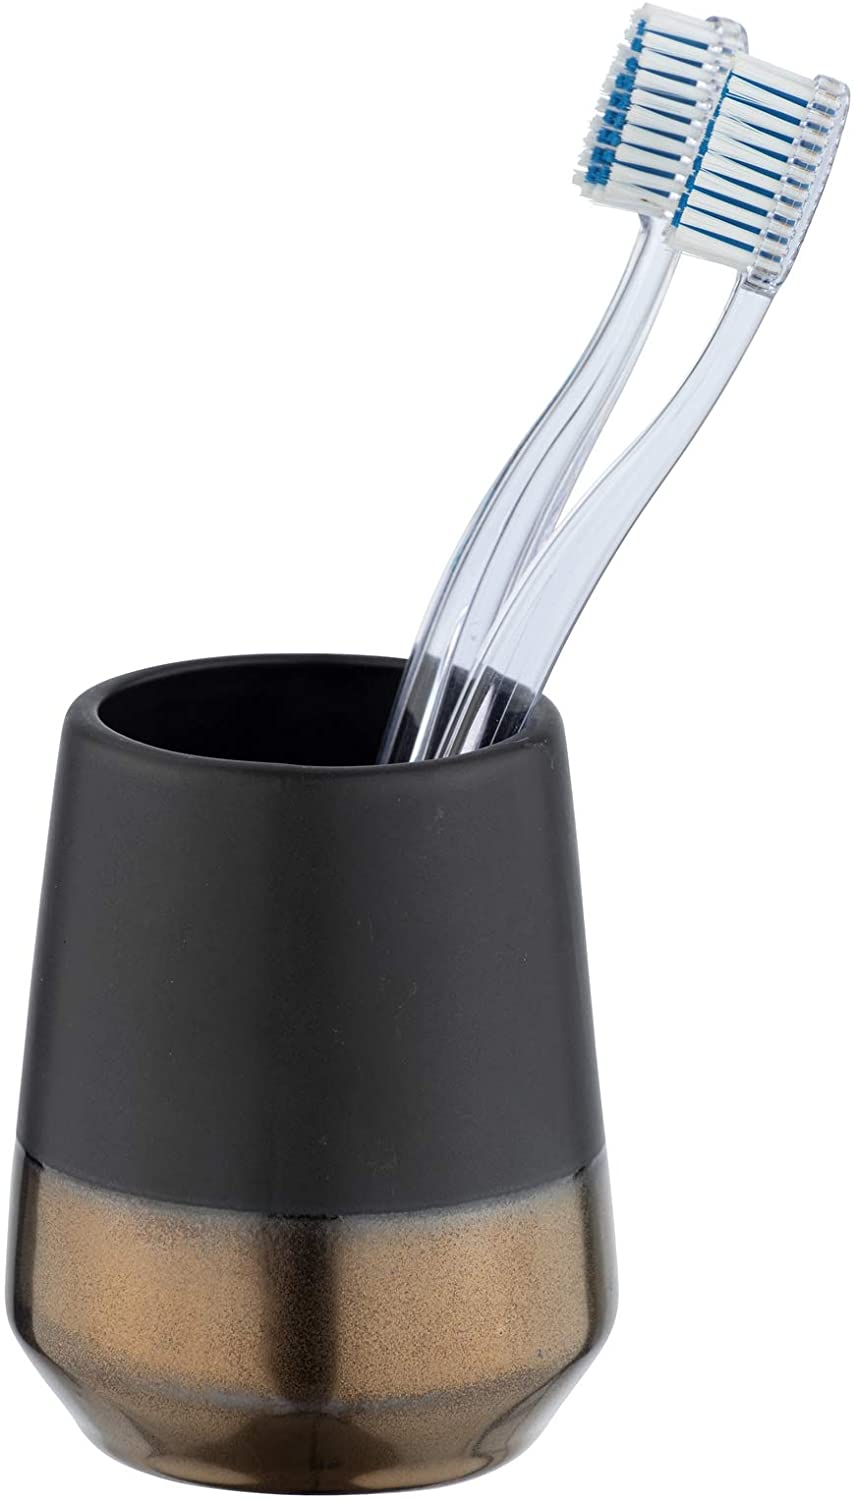 Zahnputzbecher Brandol, hochwertiger Zahnbürstenhalter für Zahnbürste und Zahnpasta aus hochwertiger Keramik, Ø 8 x 10 cm, Schwarz/Kupfer